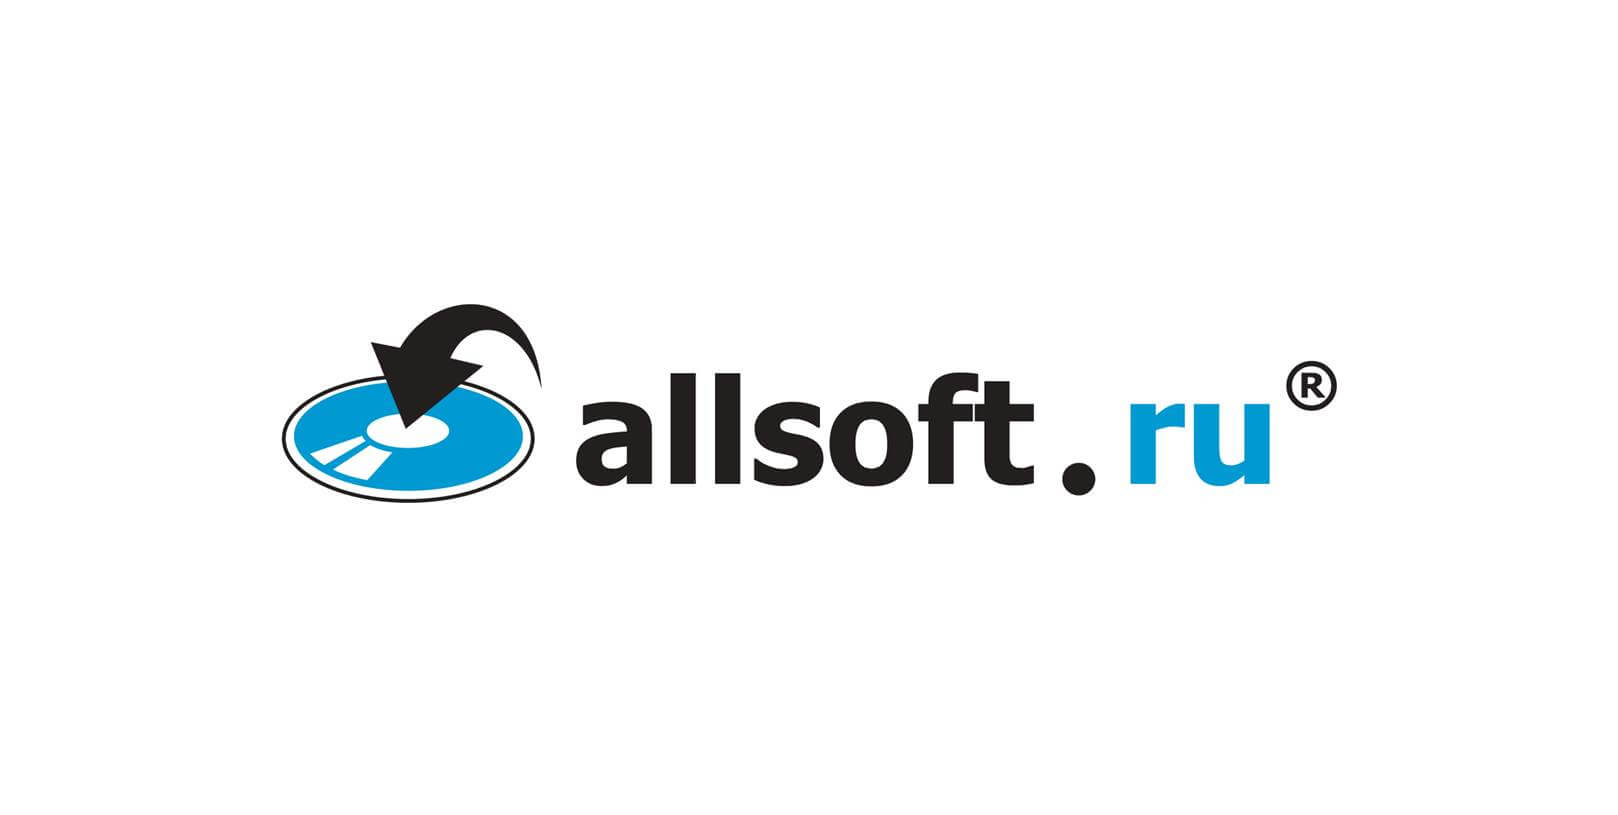 Только три дня ловите скидки на популярные программы и электронику!Распродажа 11.11 уже на Allsoft: Распродажа 11.11! allsoft.ru …